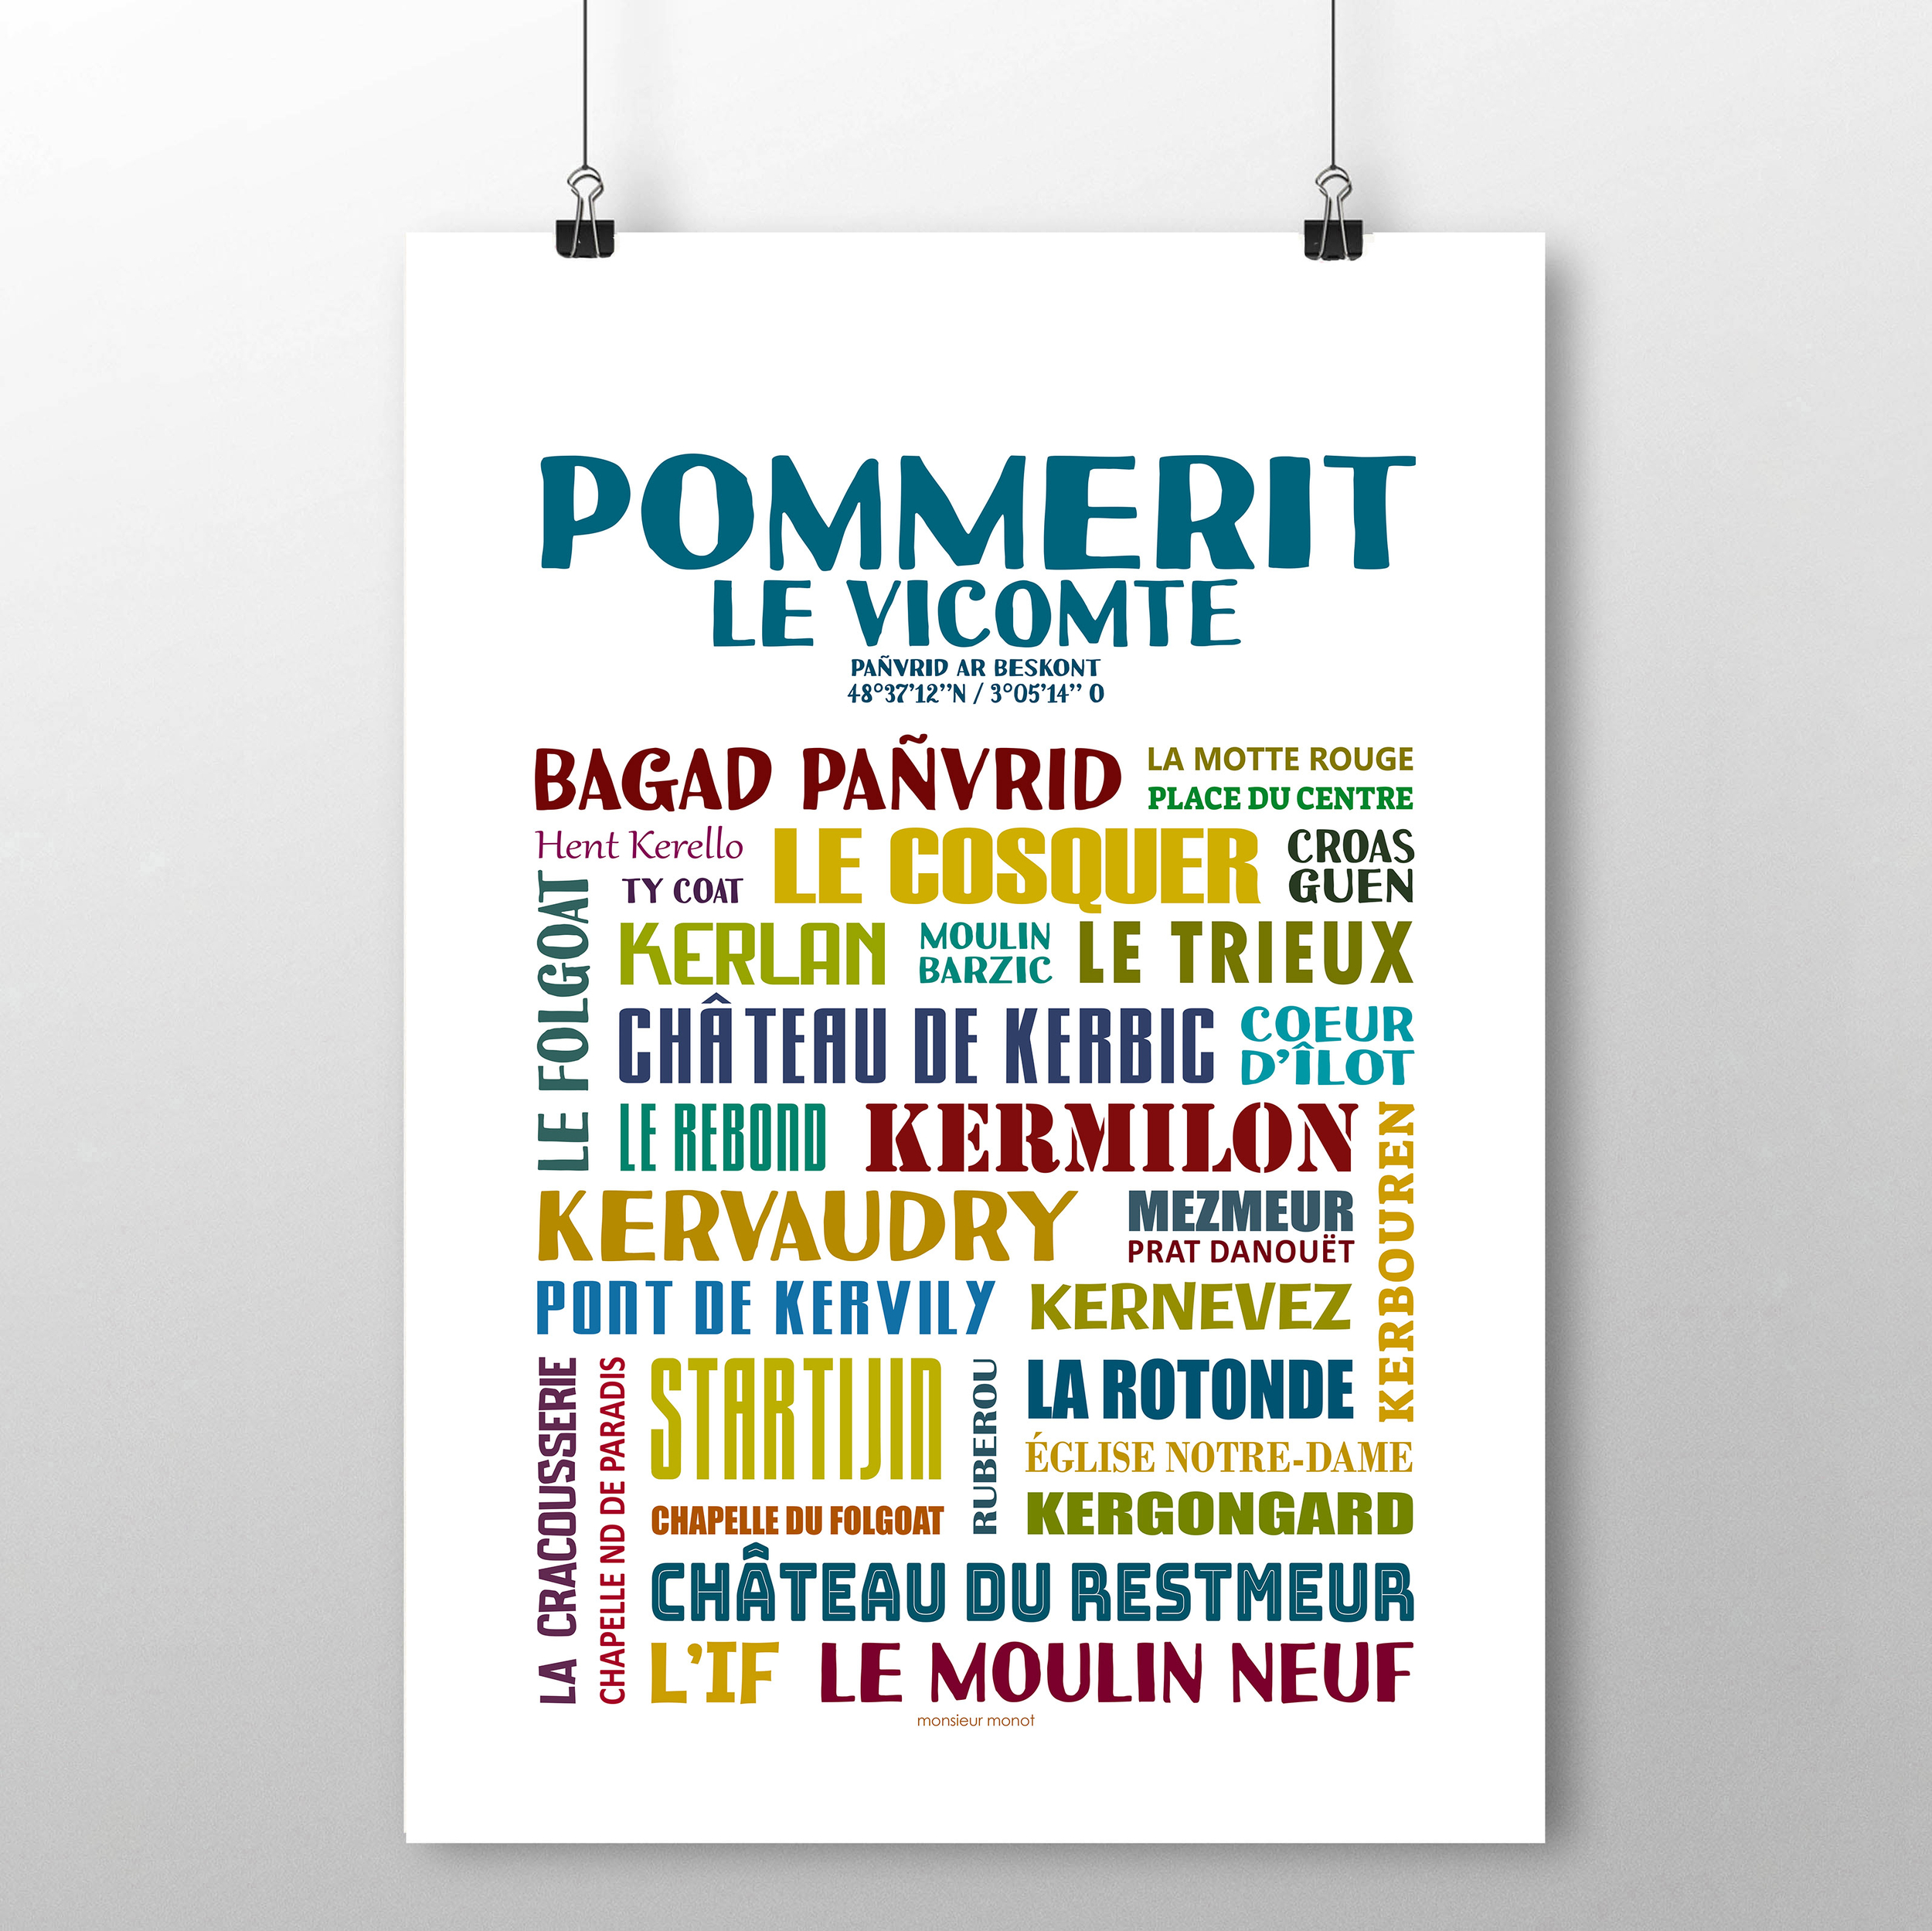 Affiche Pommerit Le vicomte 2